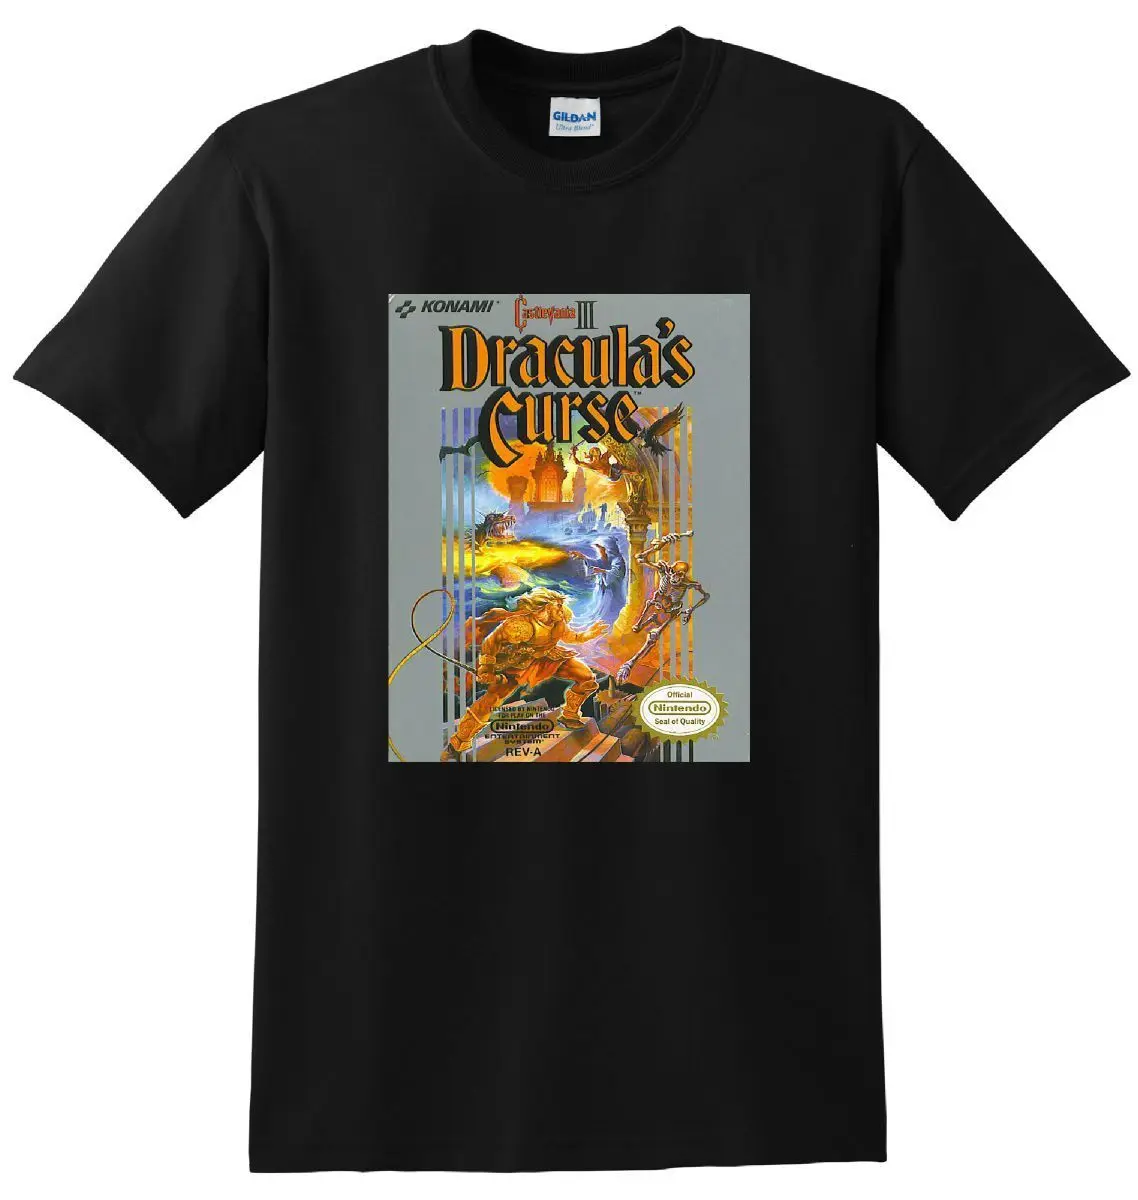 Castlevania III Nes Классическая игра футболка-черная рубашка новая мужская мода с коротким рукавом Футболка мужская с коротким рукавом 100% хлопок